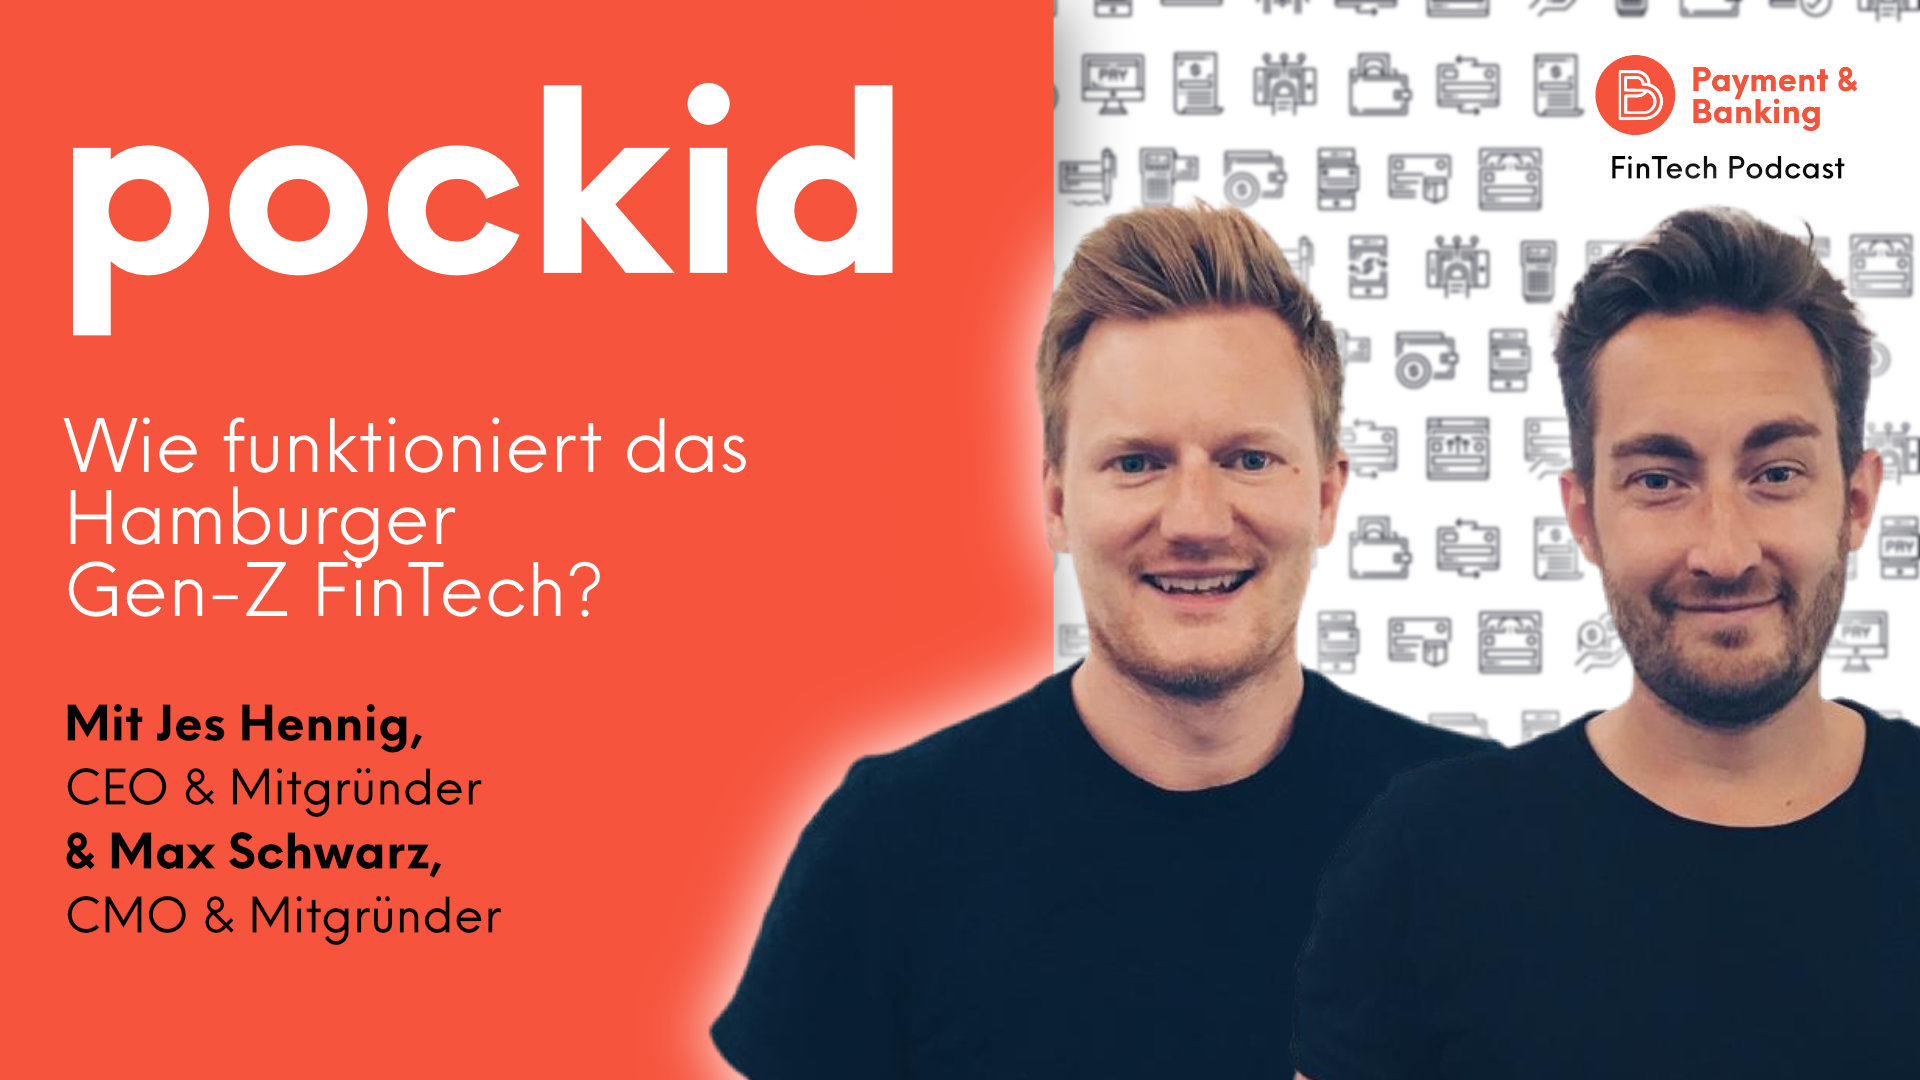 Die beiden pockid-Mitgründer Jes Hennig und Max Schwarz sprechen über die Pläne und den Erfolg ihres Bankkontos für junge Menschen und Eltern.